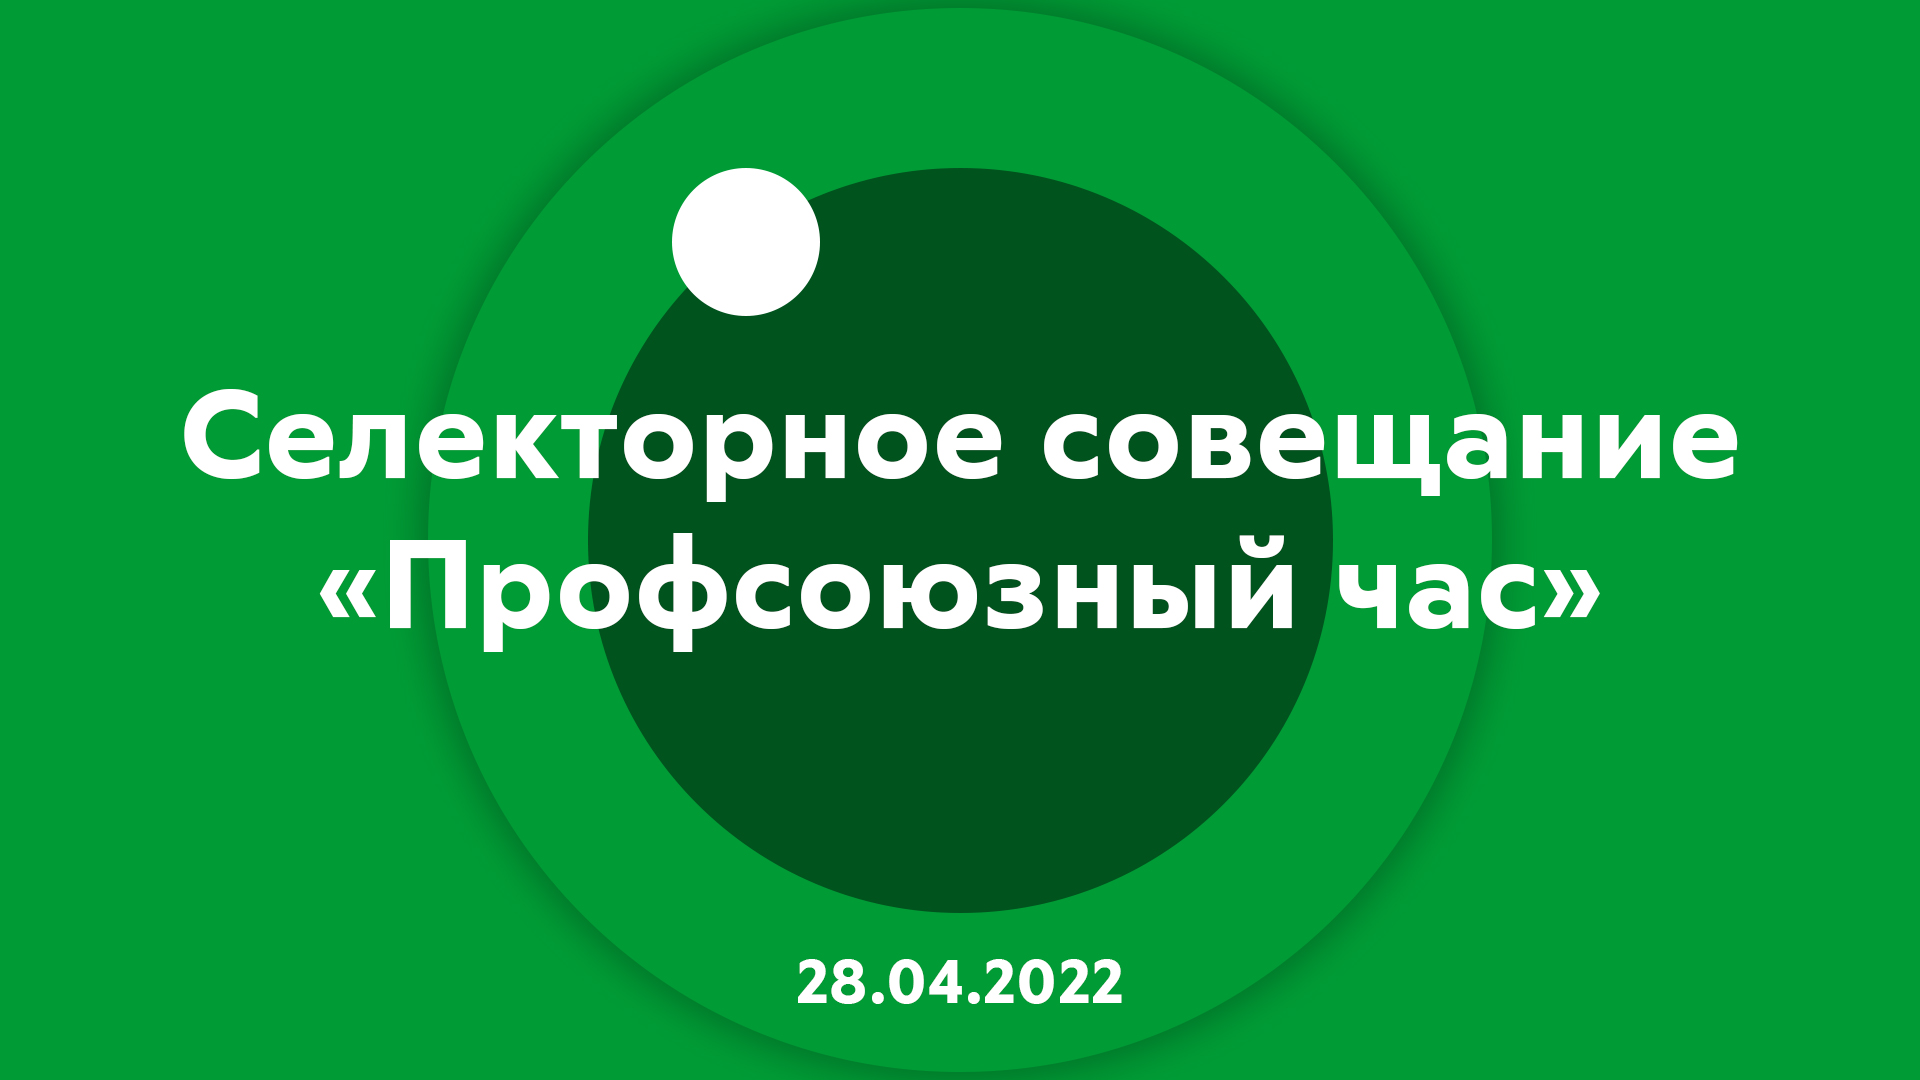 Селекторное совещание "Профсоюзный час" 28.04.2022